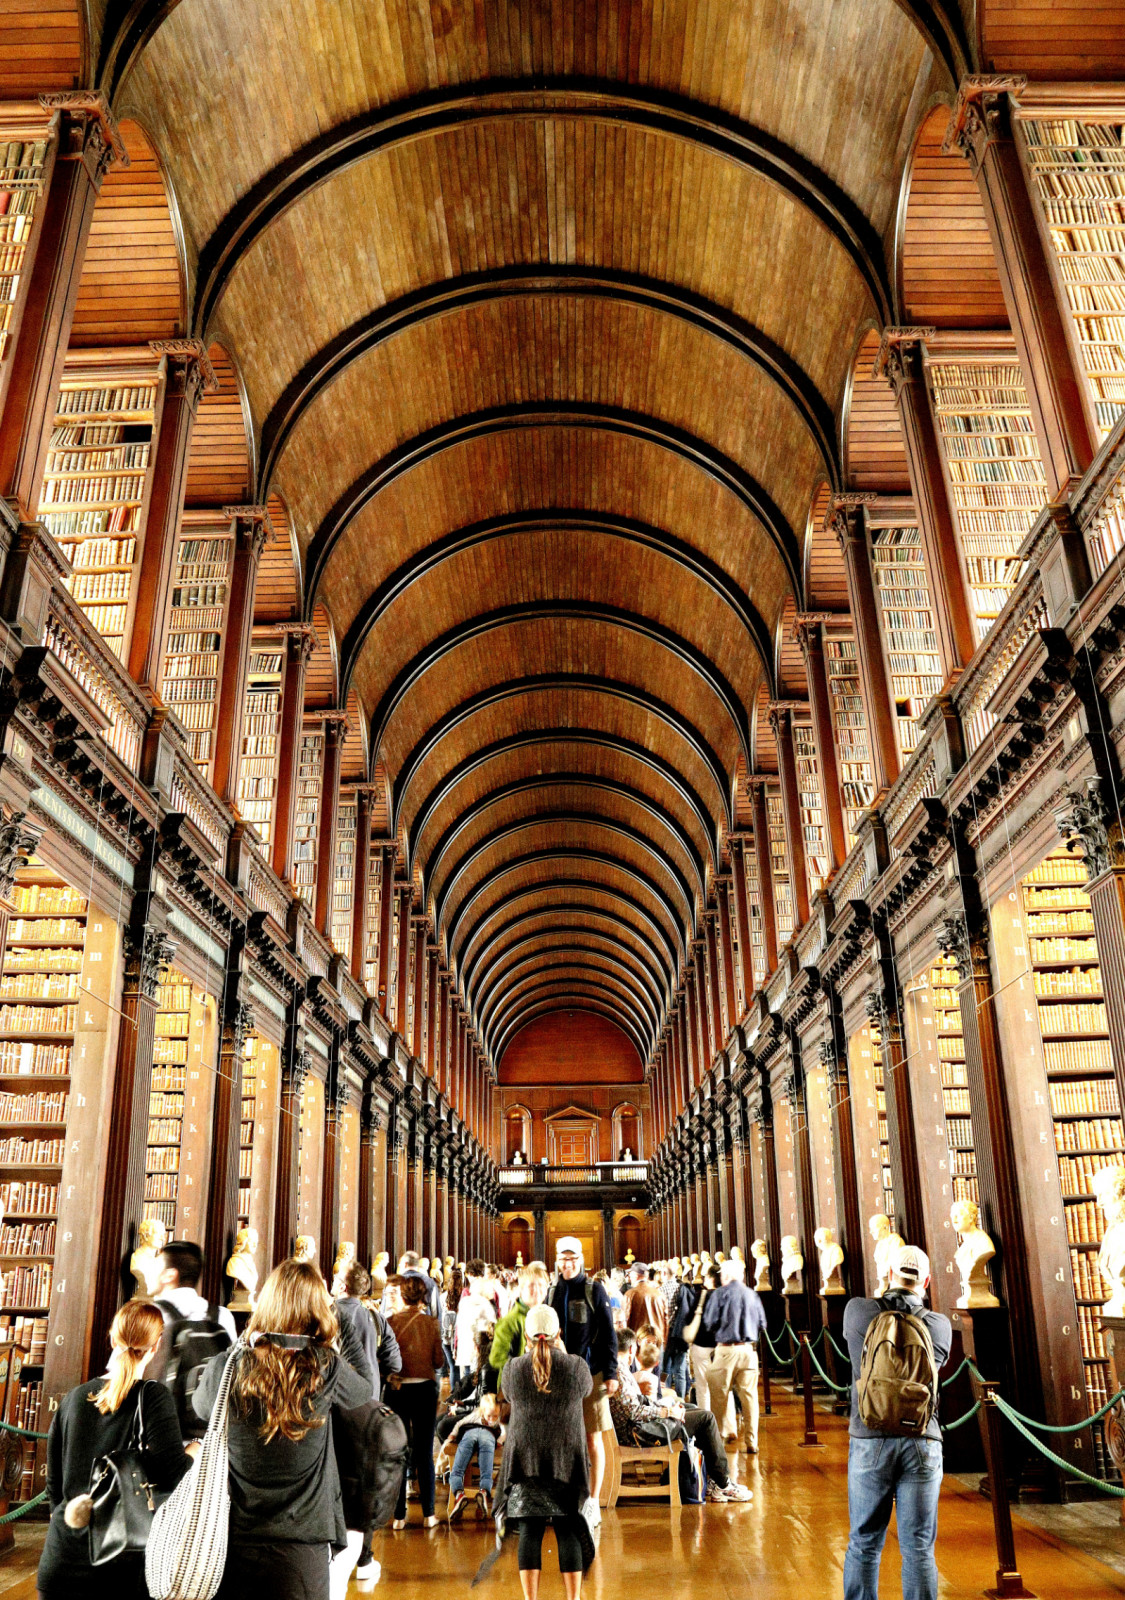 带着魔幻般感觉的爱尔兰圣三一学院图书馆